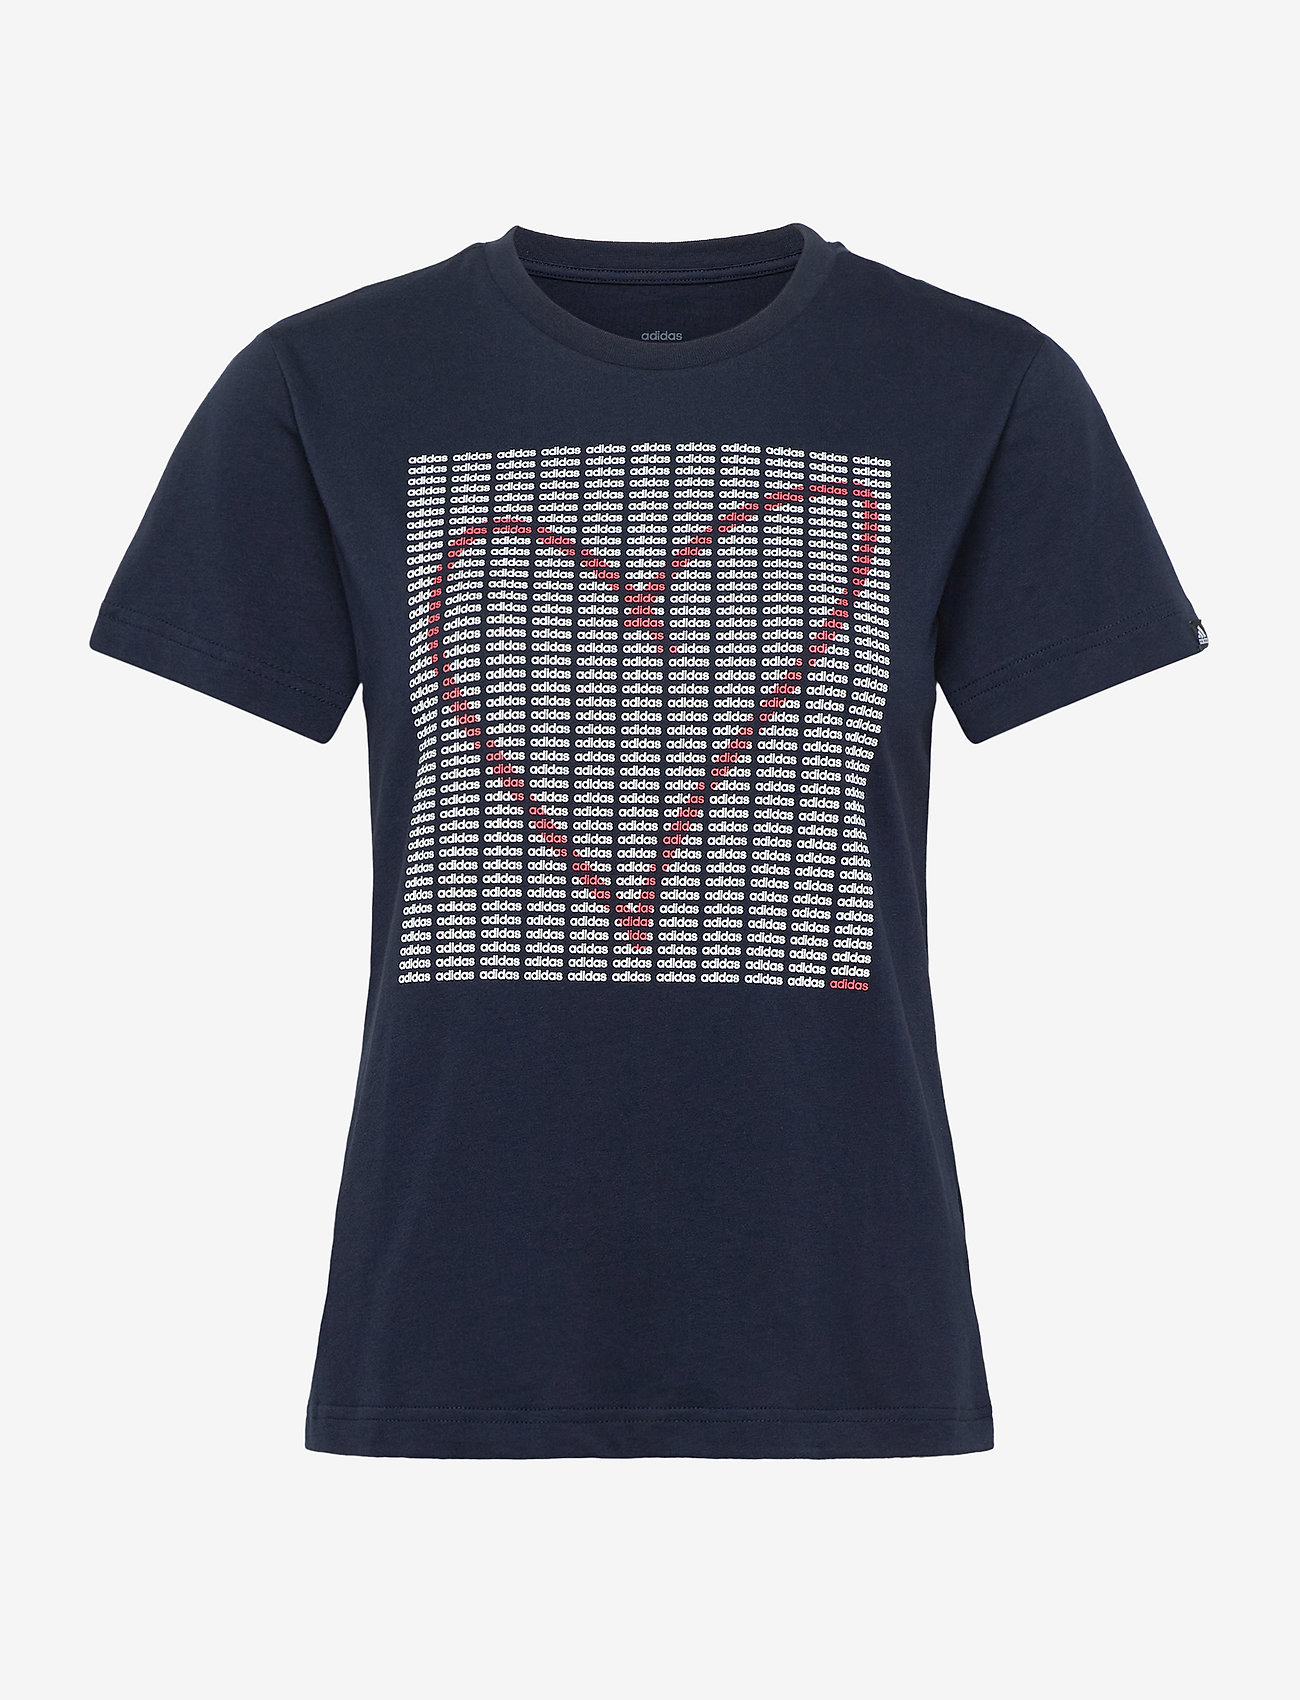 adidas heart shirt